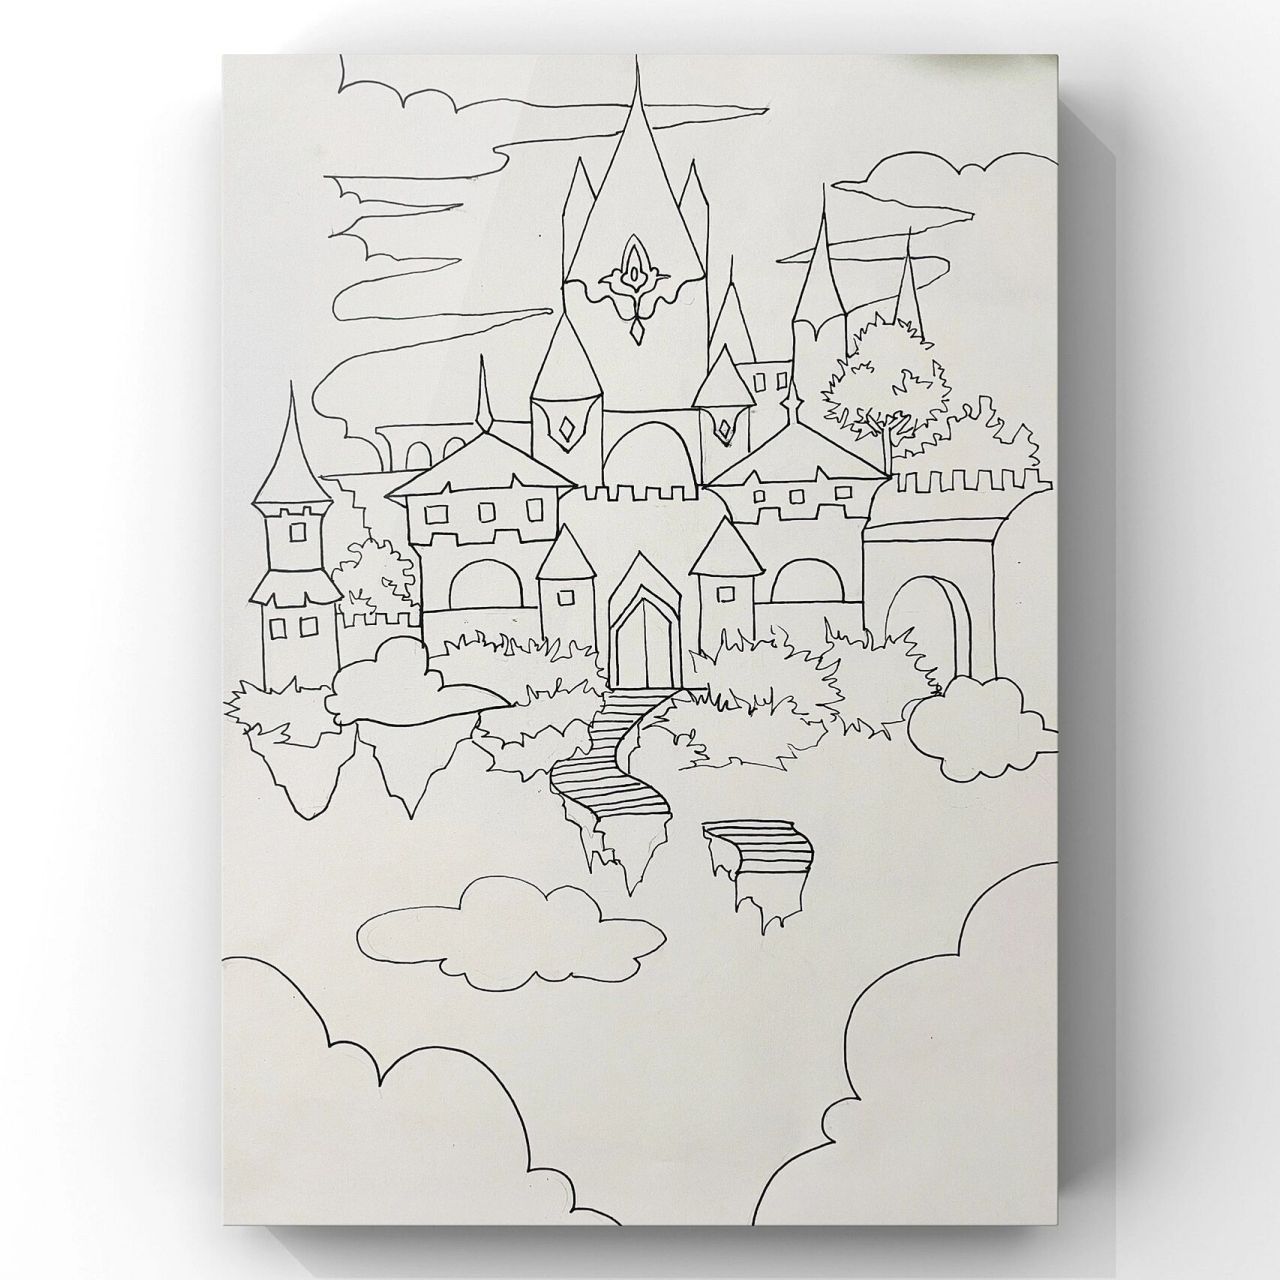 空中城堡幻想画图片